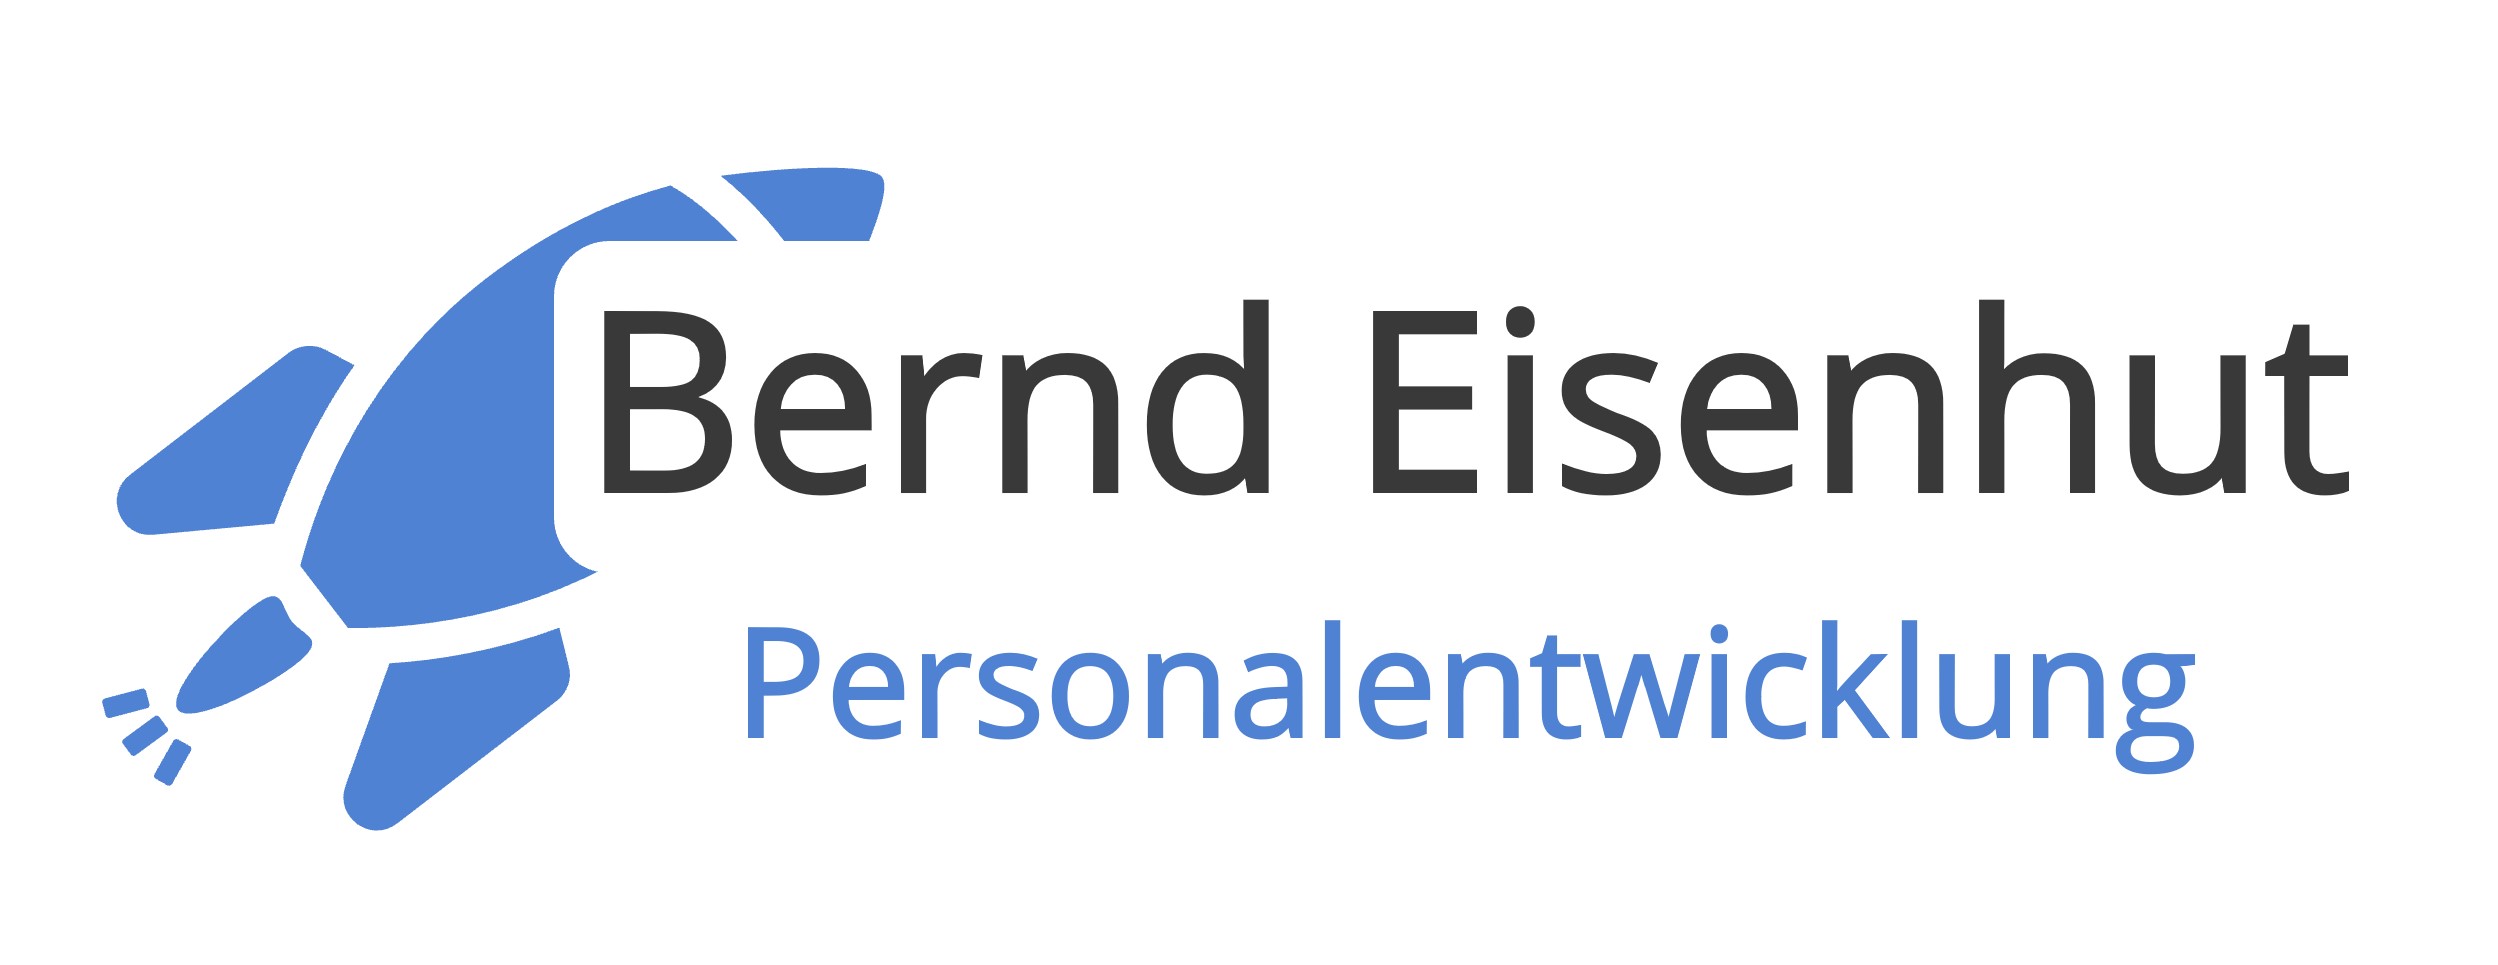 Bernd Eisenhut - Personalentwicklung Logo